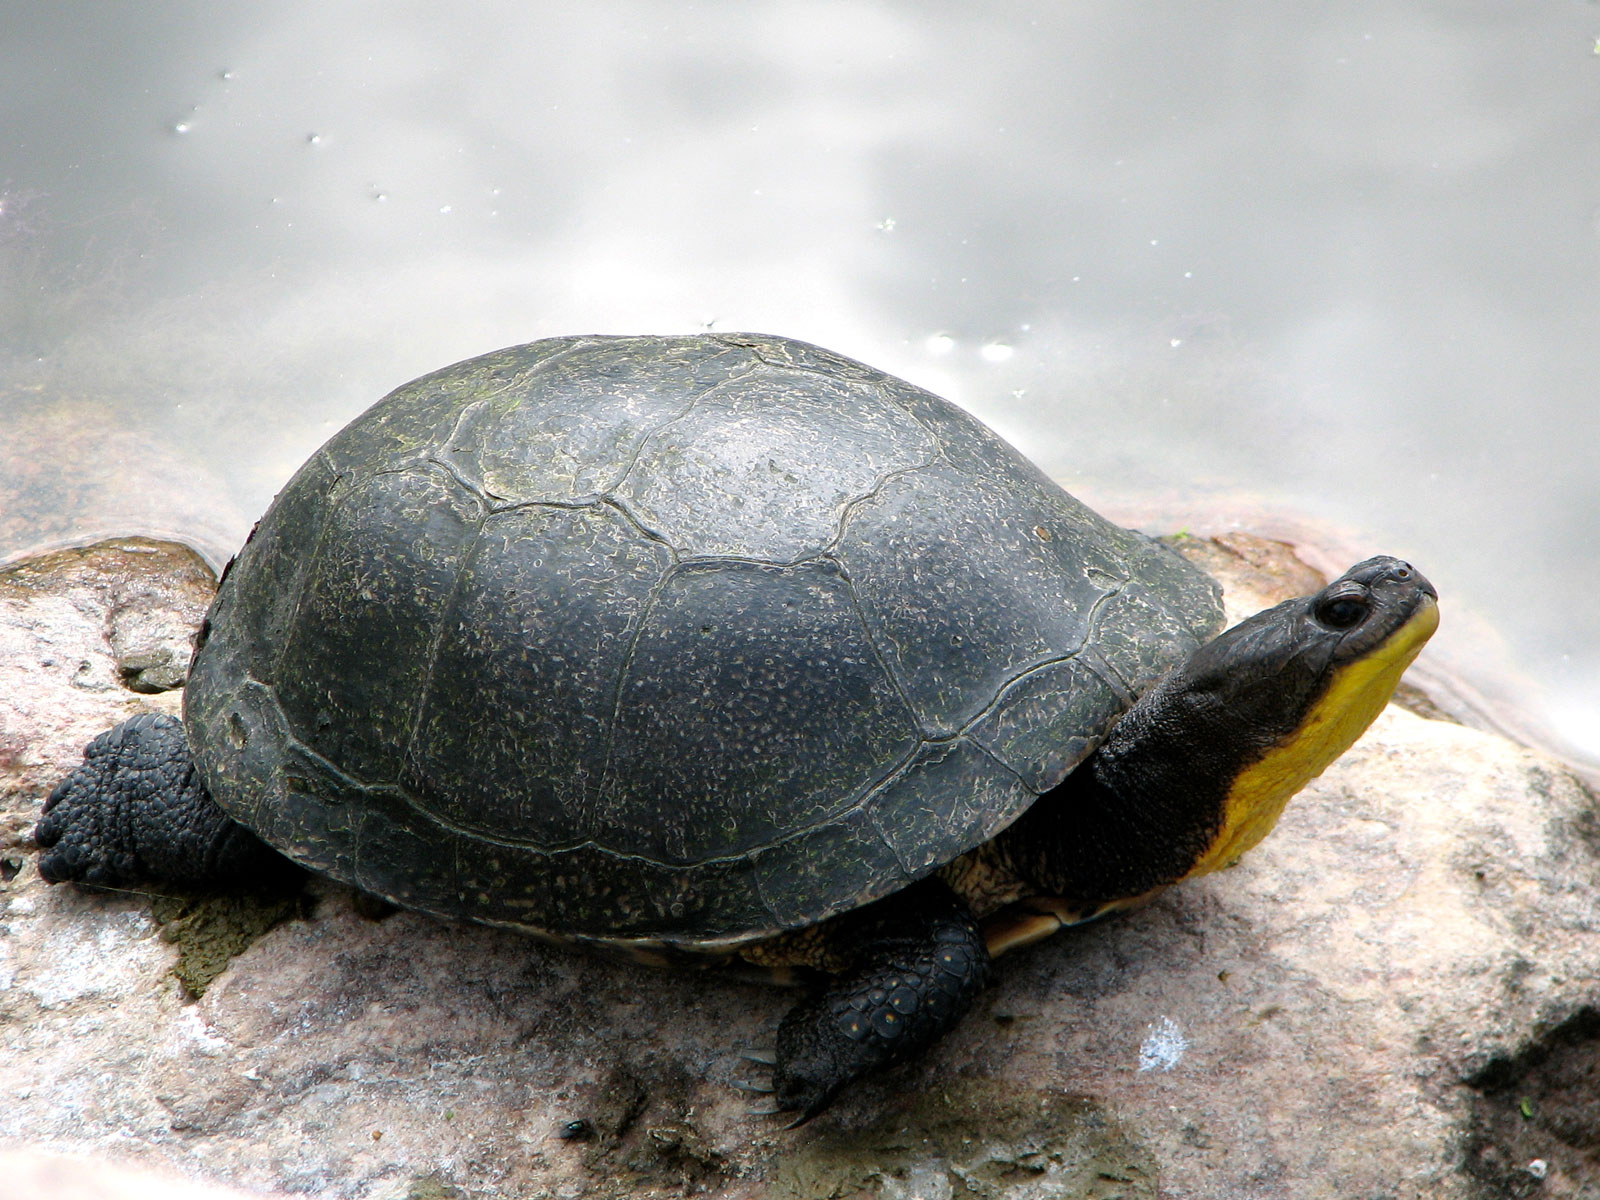 A blandings turtle